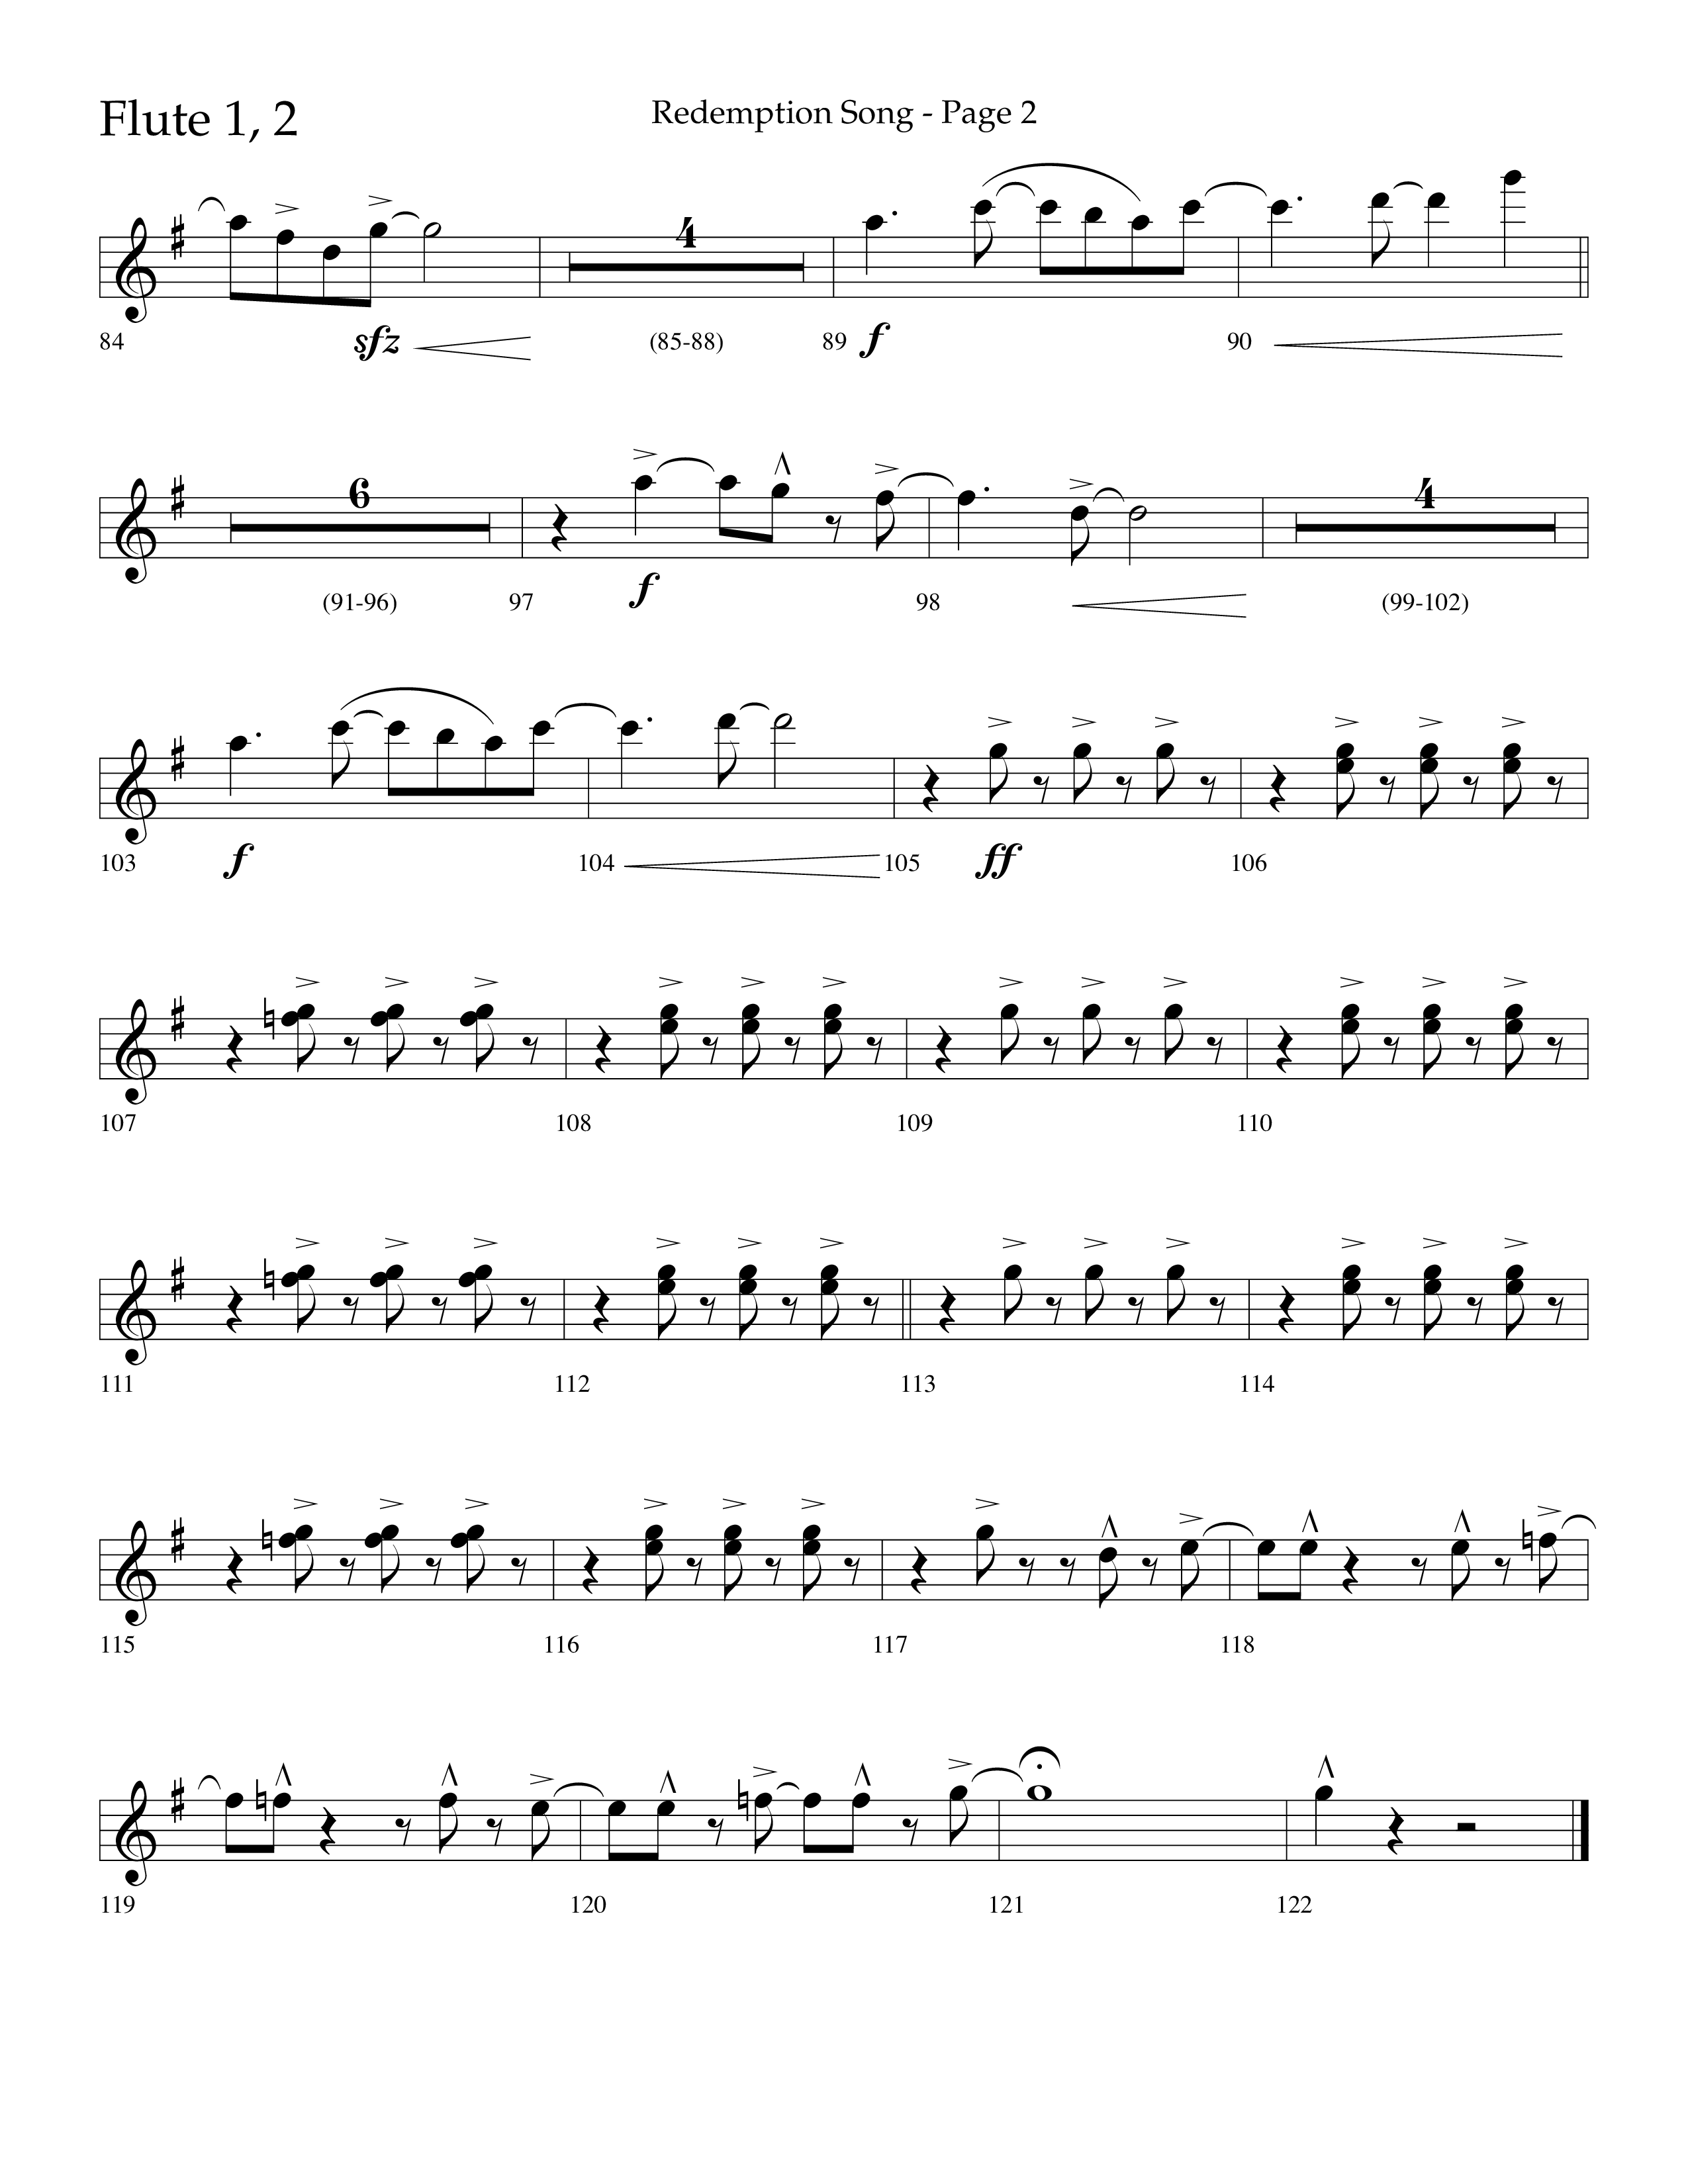 Redemption Song (Choral Anthem SATB) Flute 1/2 (Lifeway Choral / Arr. Cliff Duren)